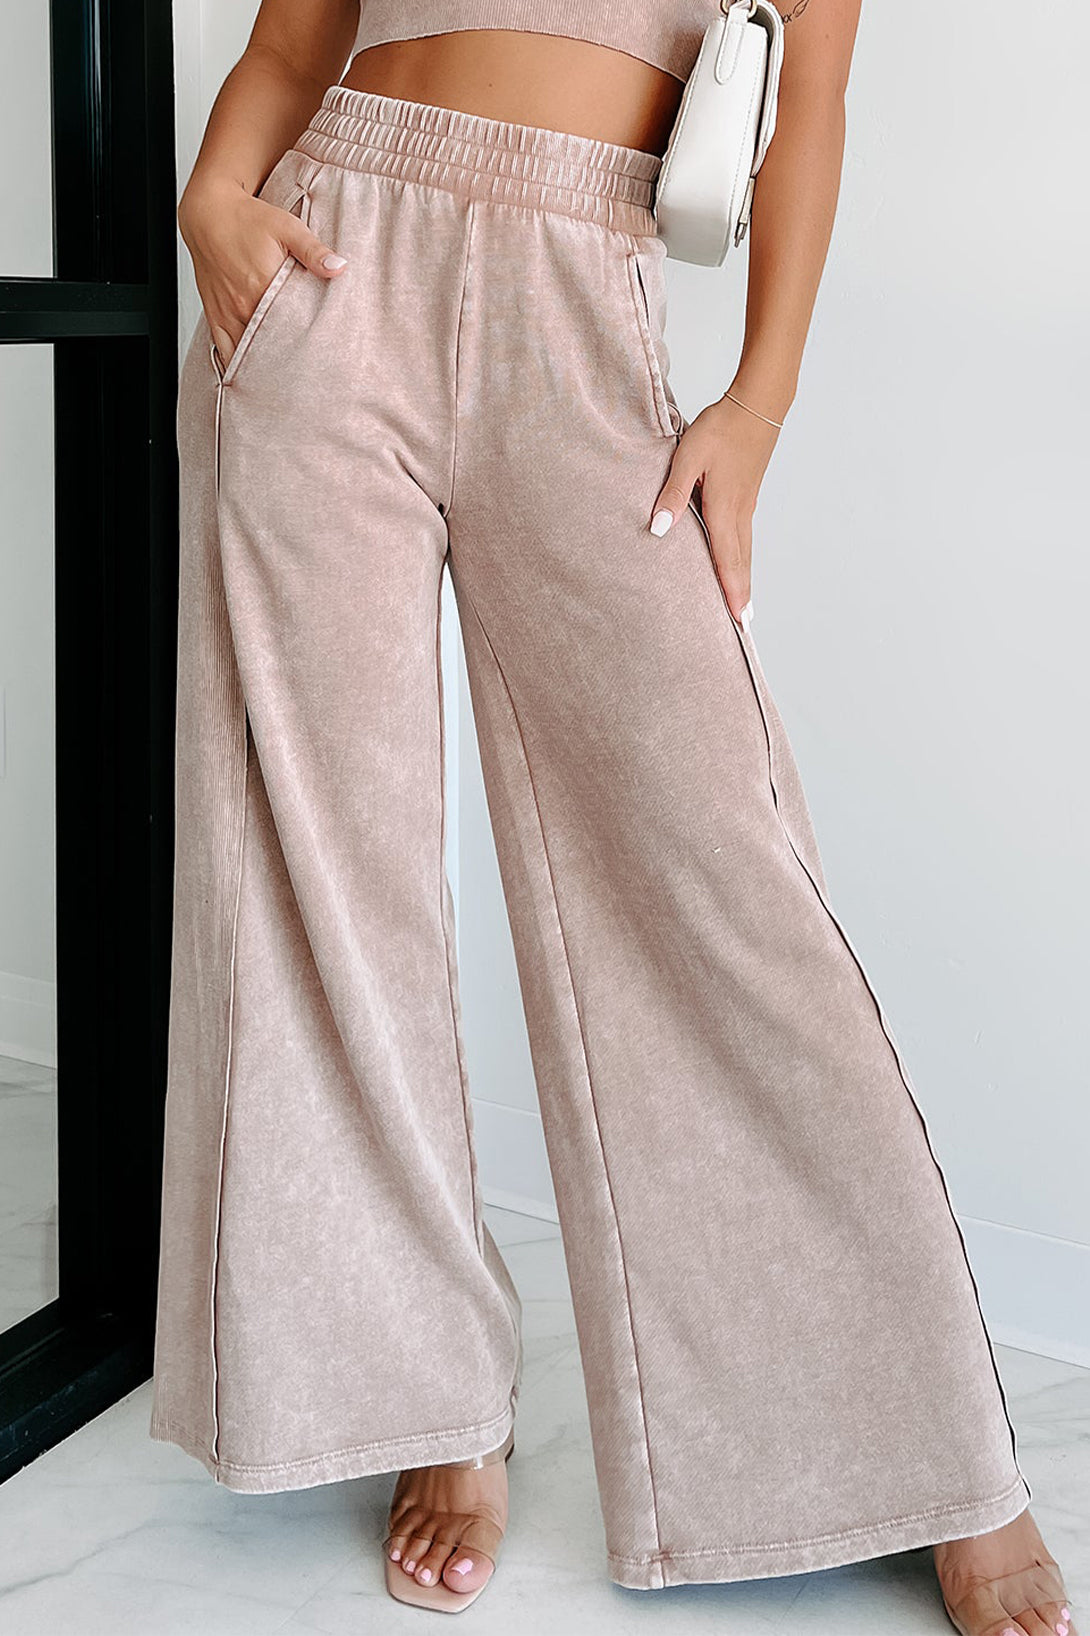 Pantaloni a gamba larga con cintura in vita smock color castano chiaro con lavaggio minerale